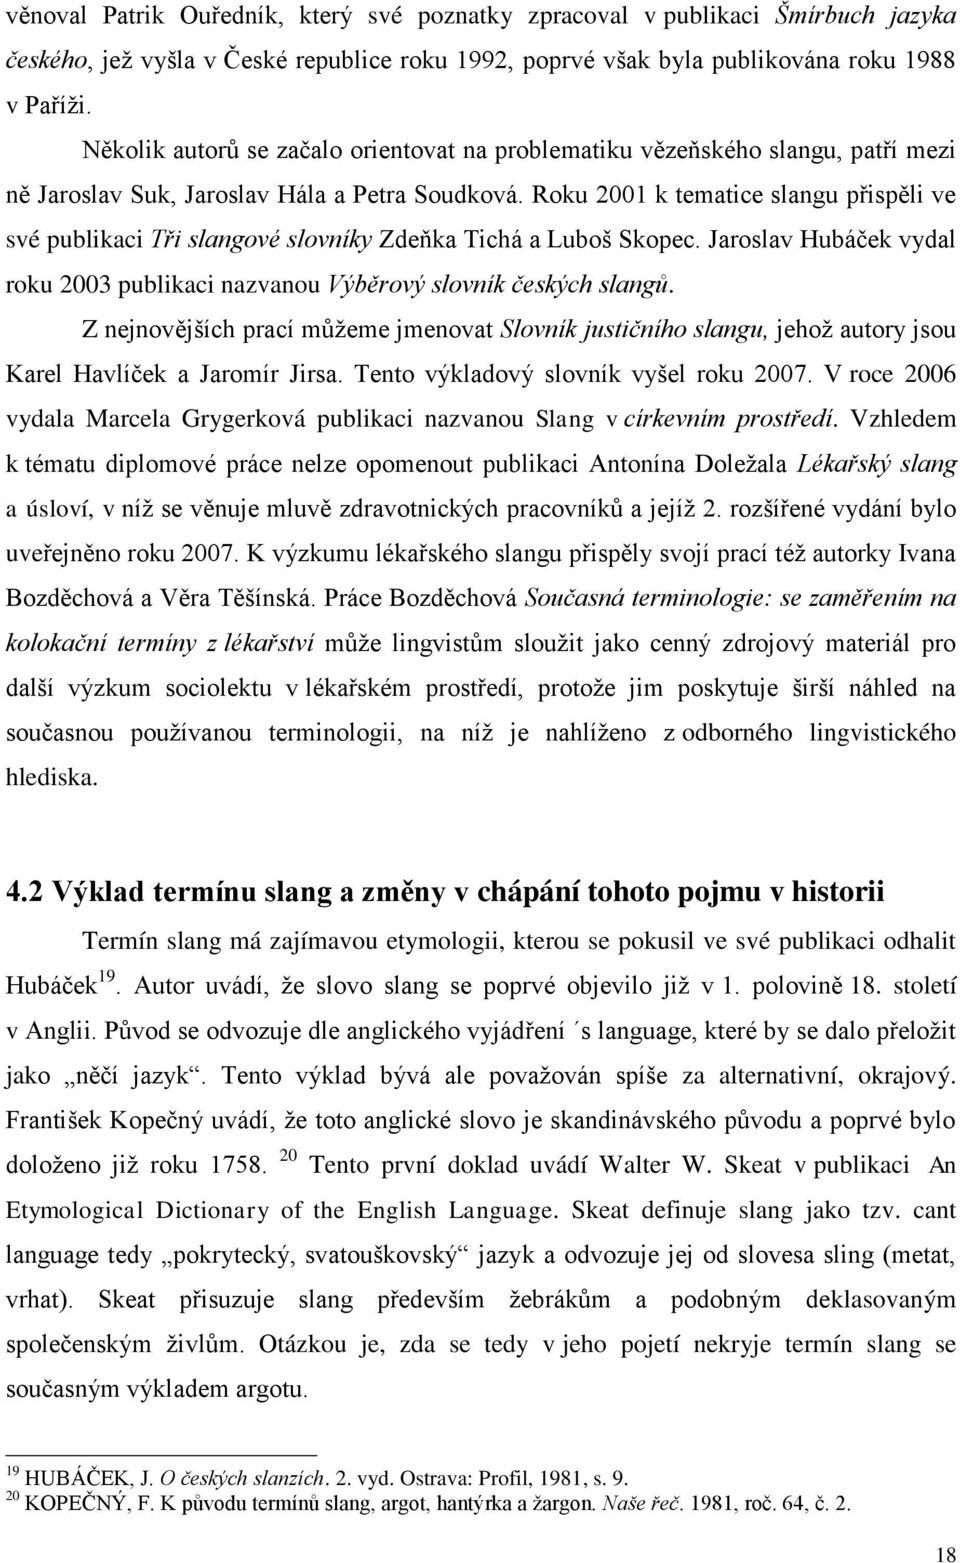 Roku 2001 k tematice slangu přispěli ve své publikaci Tři slangové slovníky Zdeňka Tichá a Luboš Skopec. Jaroslav Hubáček vydal roku 2003 publikaci nazvanou Výběrový slovník českých slangů.